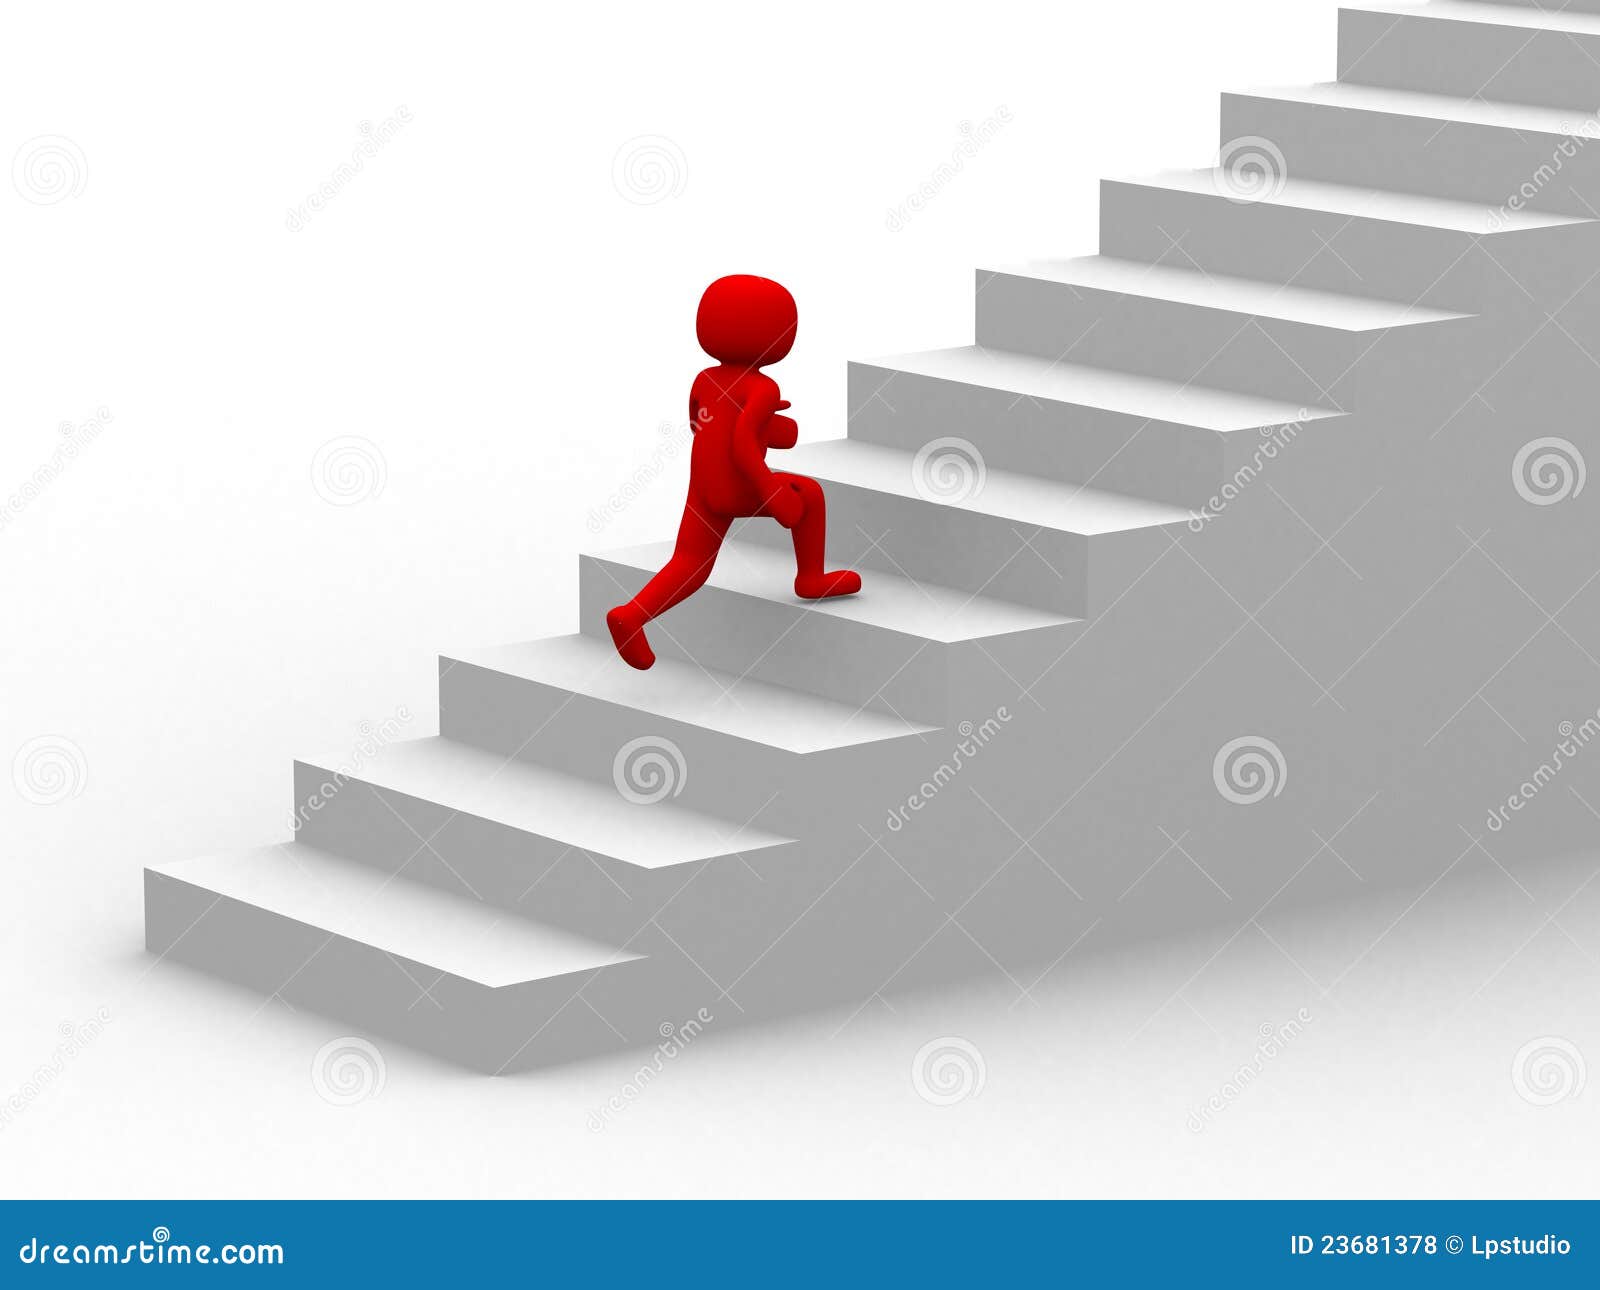 На ступеньку вскакивает хлопчик. Человечек на лестнице. Человек на ступеньках. Ступени вверх. Лестница вверх.